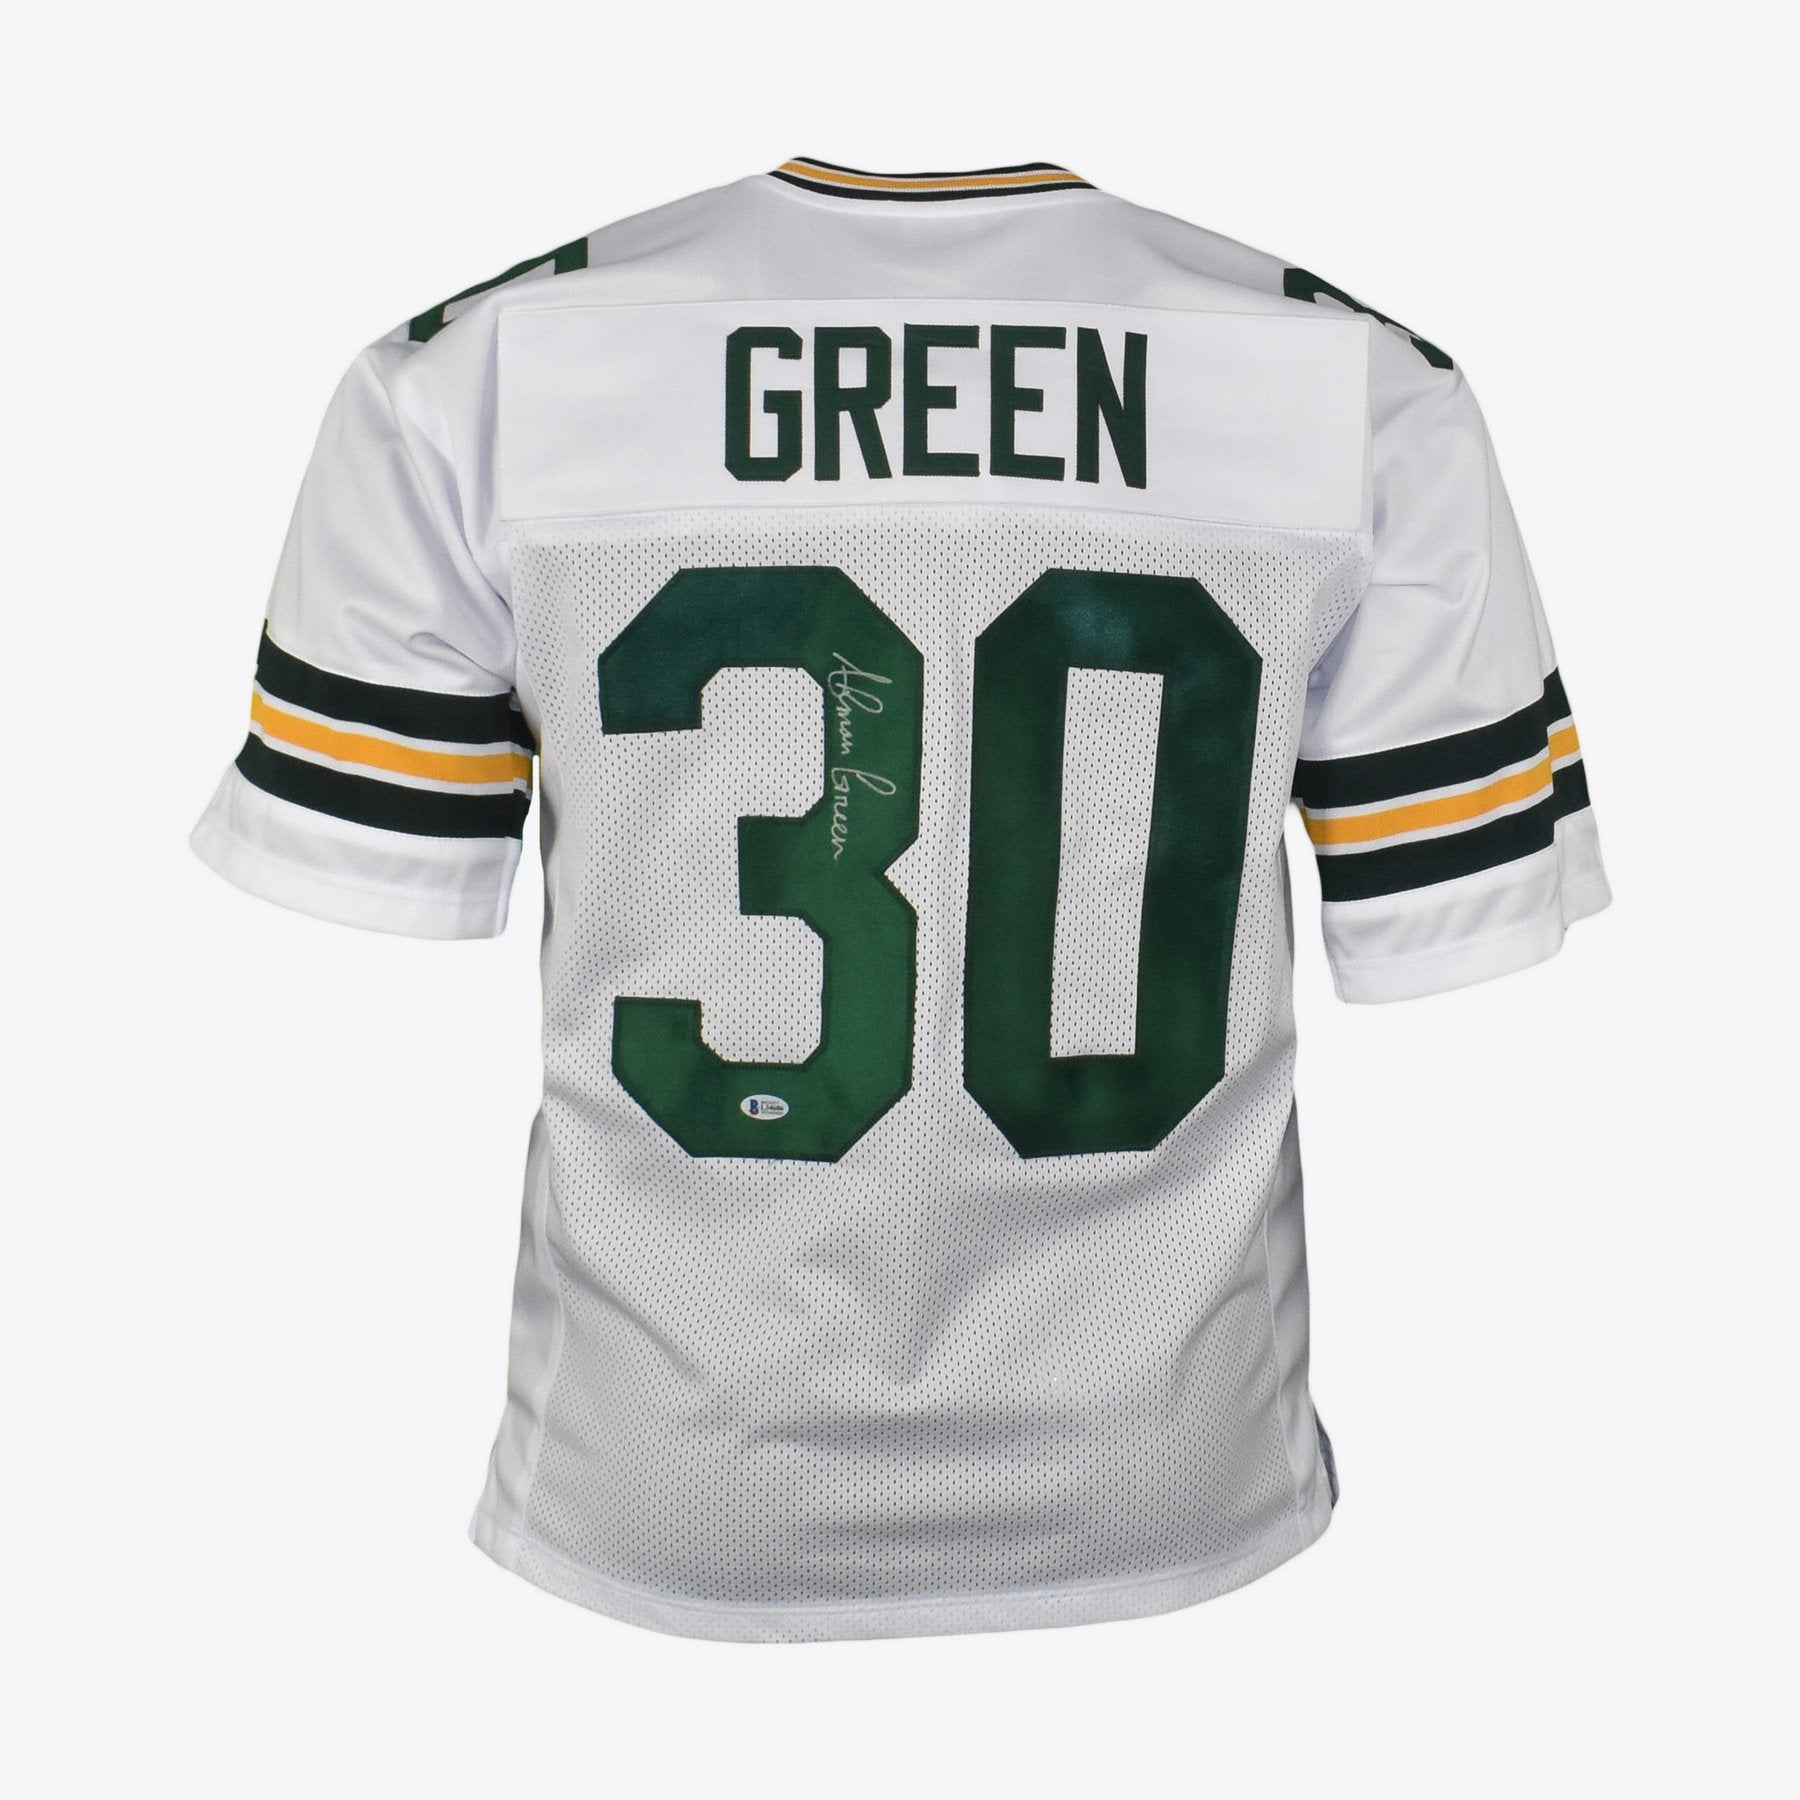 Ahman Green Autographed Green Bay Packers Football NFL Jersey Beckett